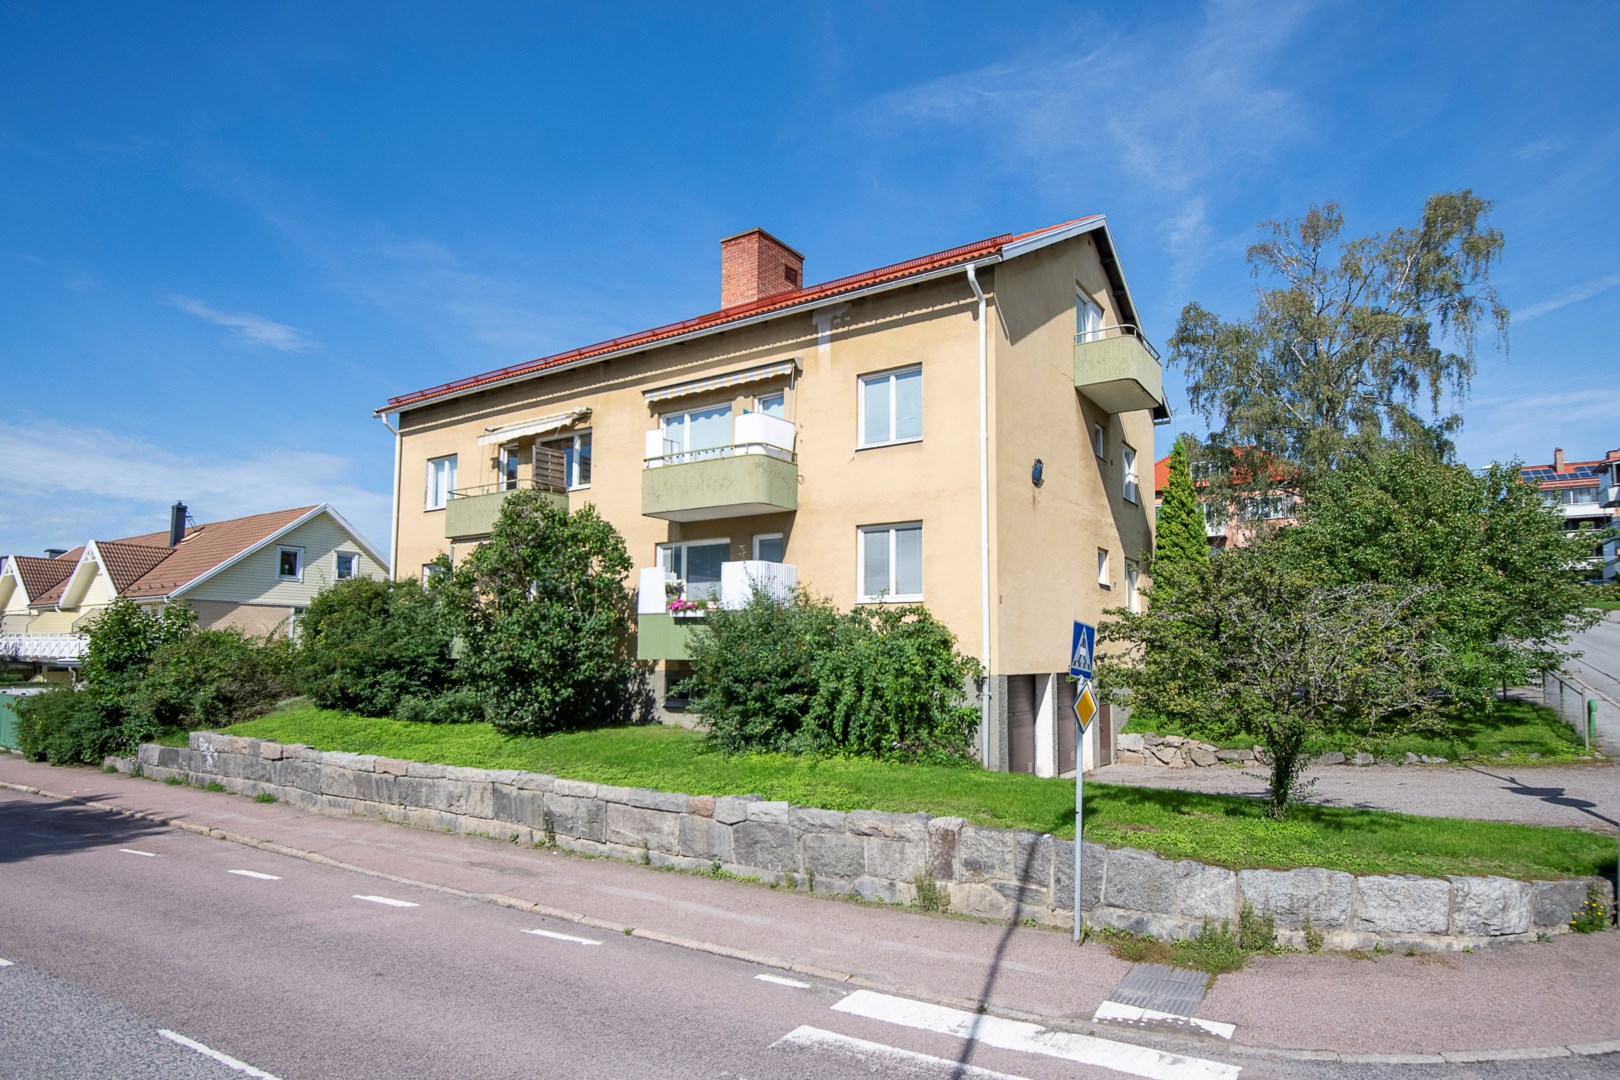 Bostadsrätt i Oxbacken, Västerås, Västmanland, Åsgatan 1